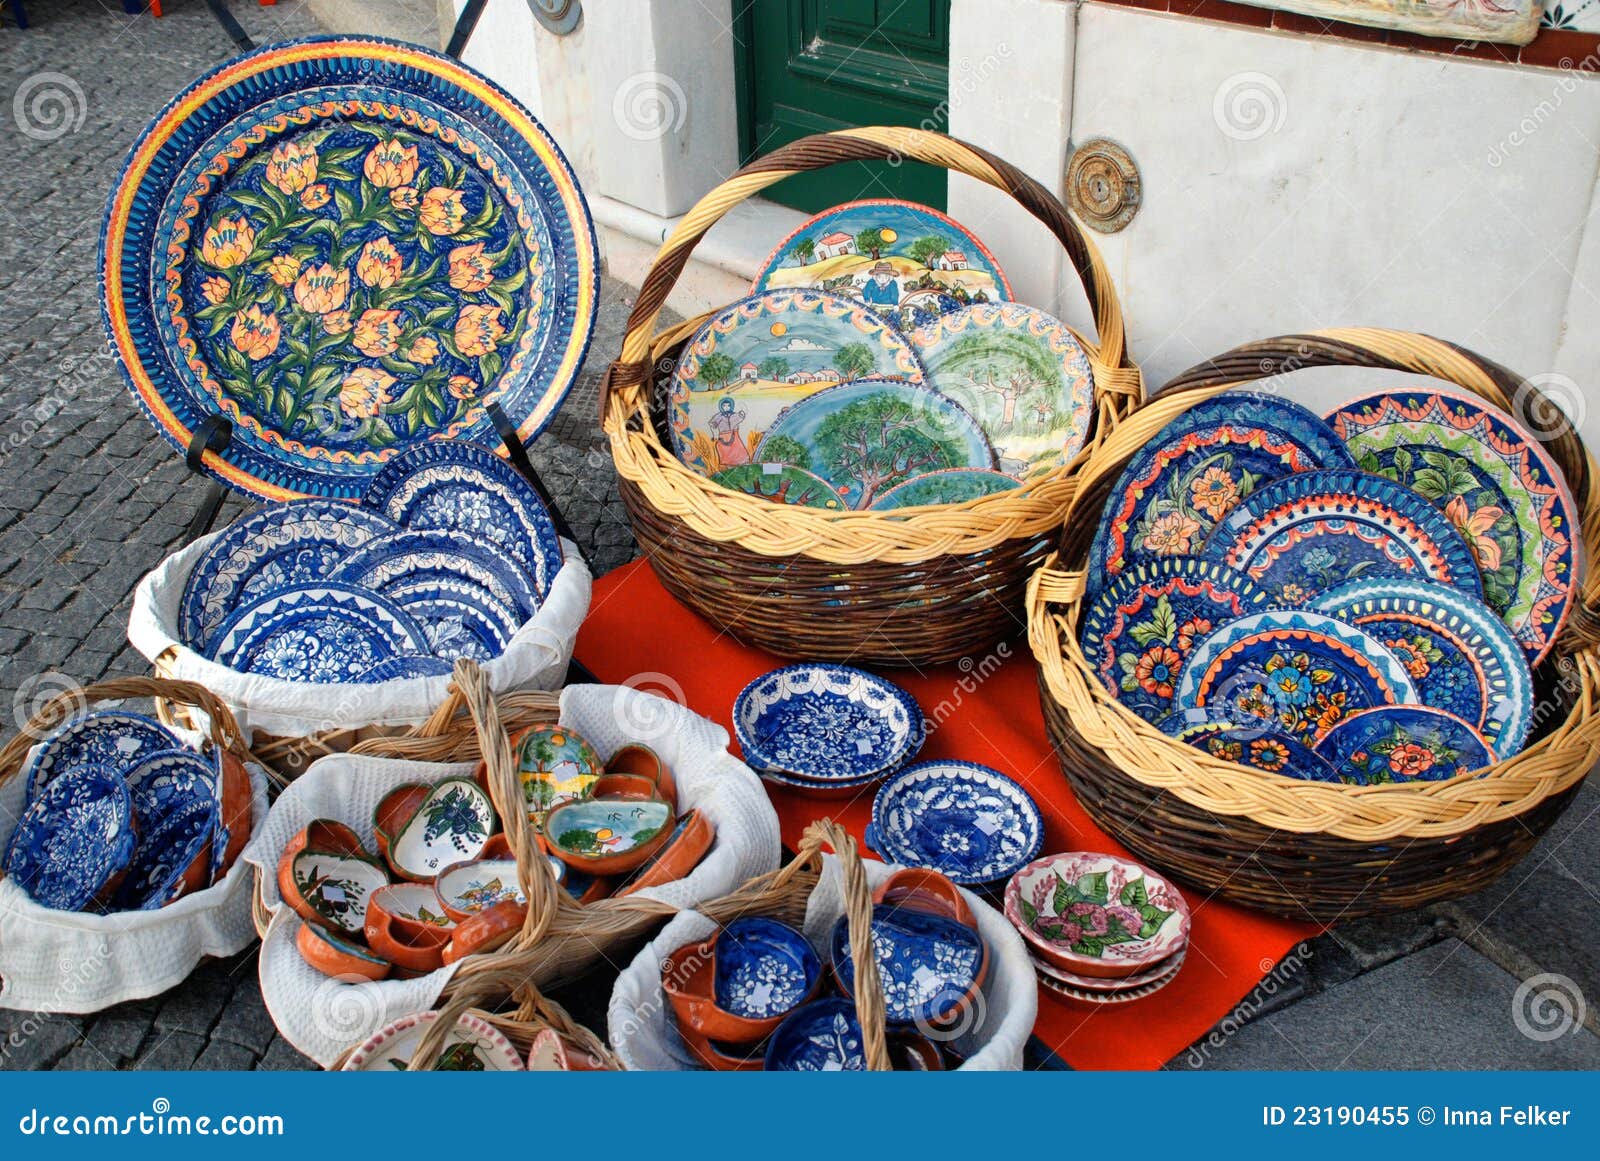 The Role Of Ceramics In Mediterranean Design